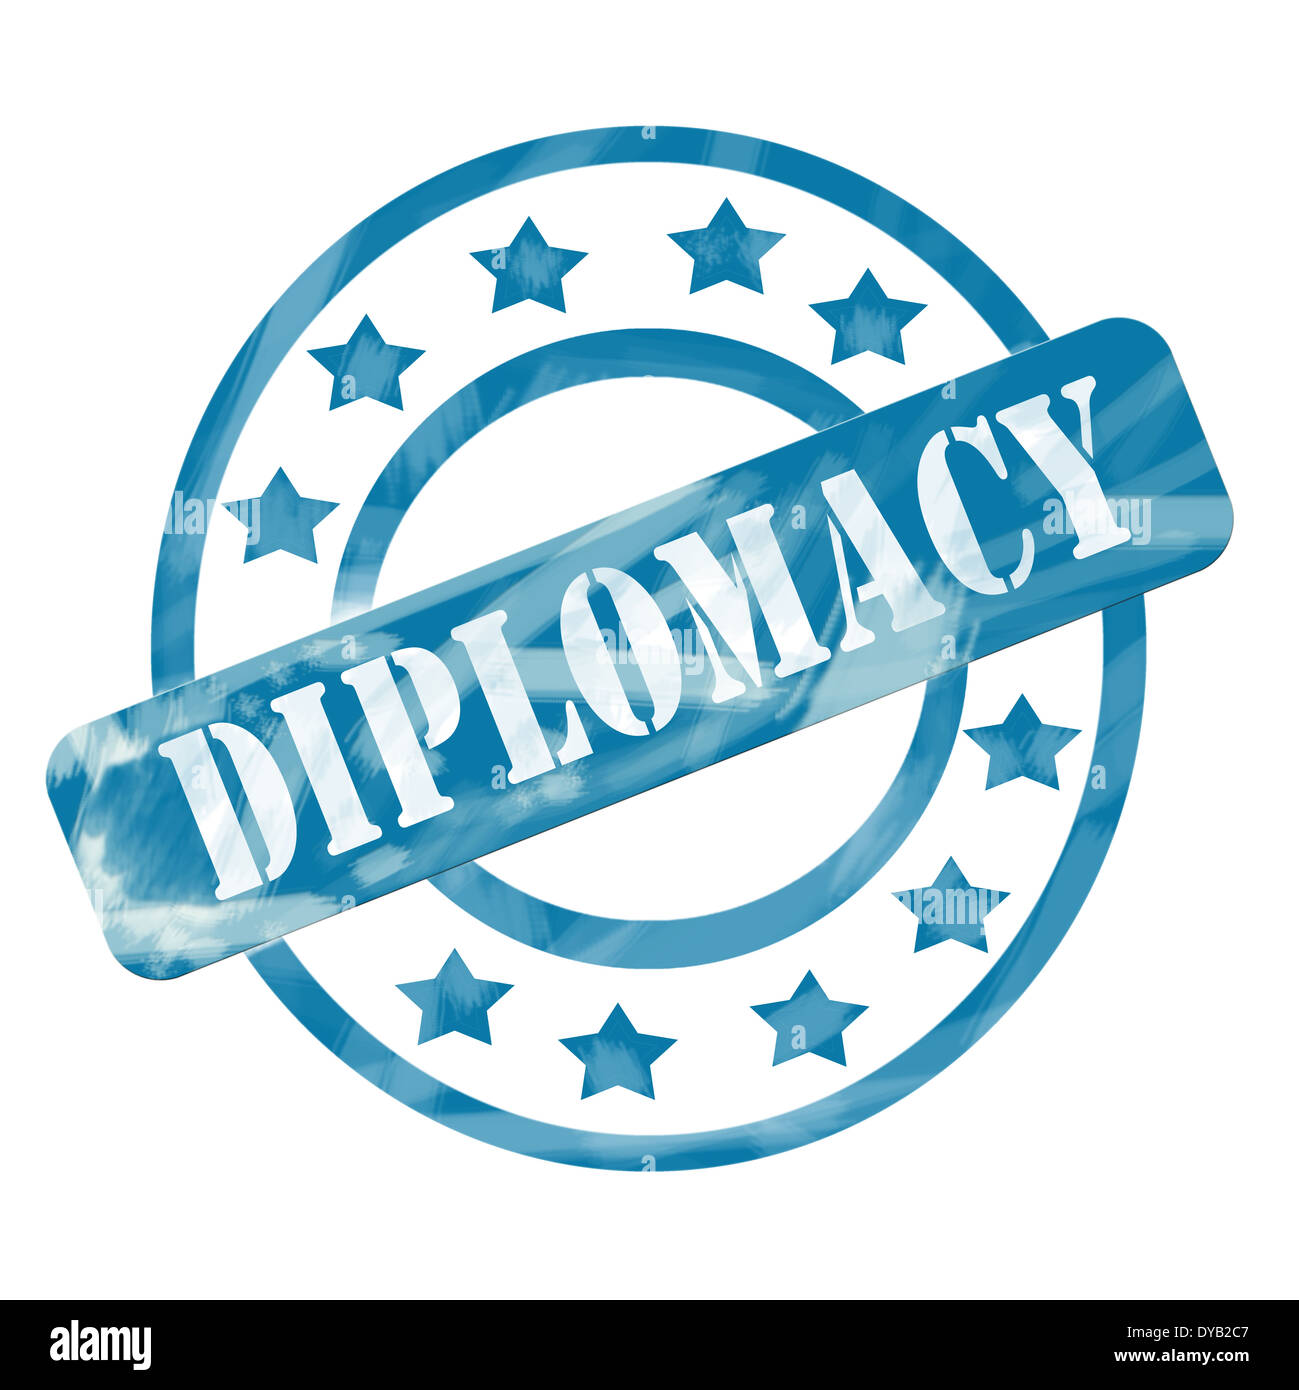 Ein blauer Tinte verwitterte aufgeraut, Kreise und Sterne Stempel Design mit dem Wort Diplomatie darauf machen ein tolles Konzept. Stockfoto